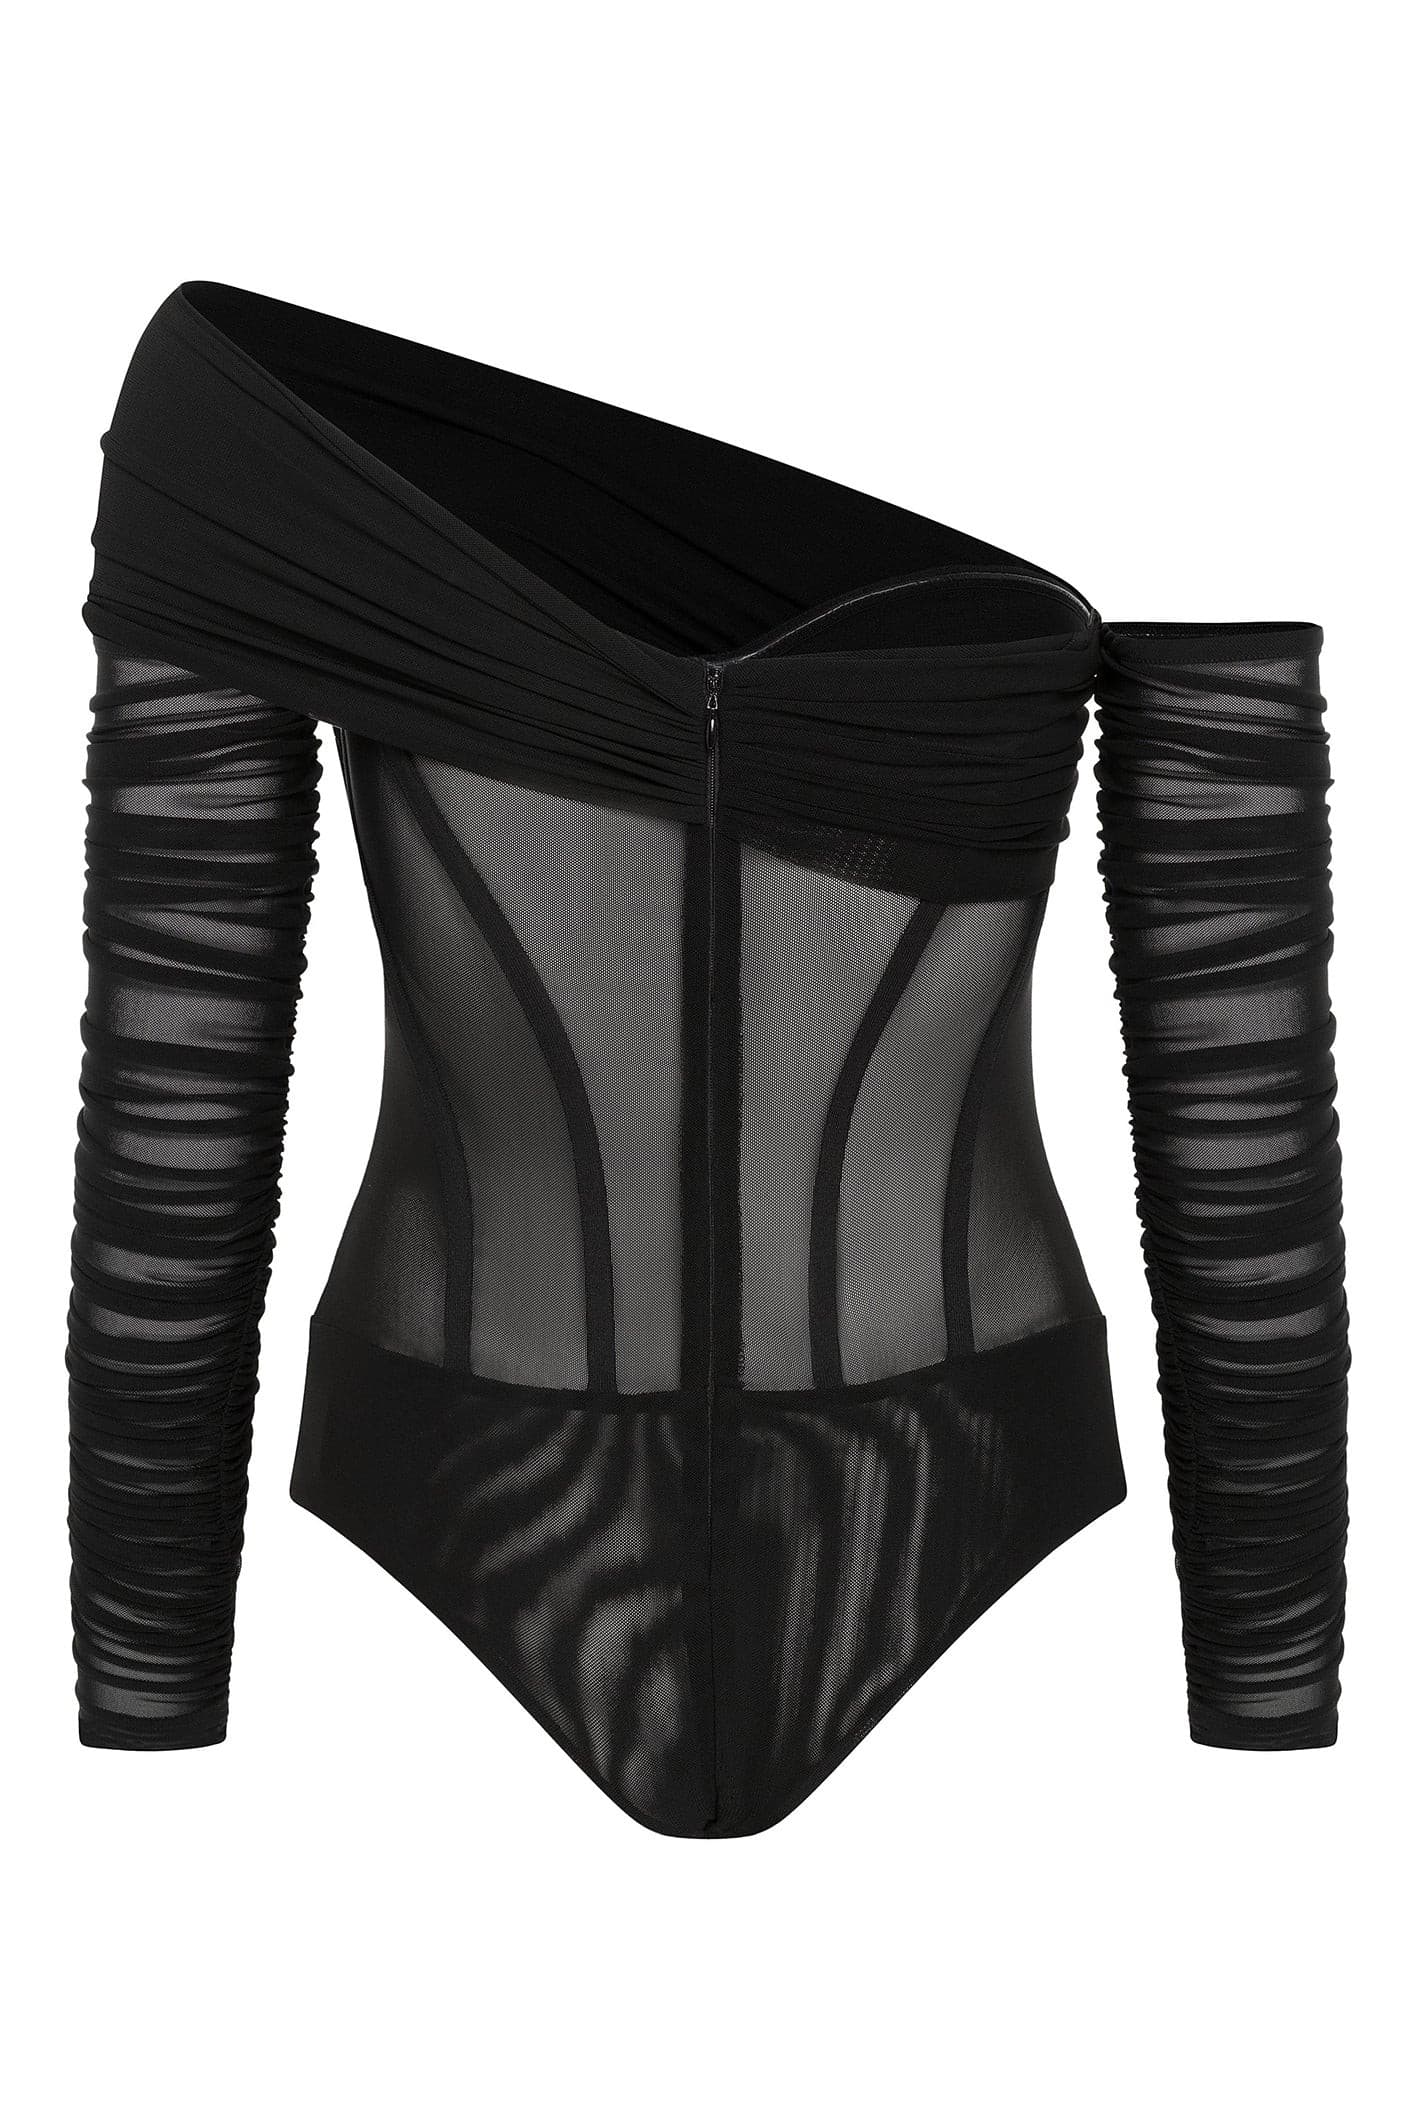 LEAU - Bardot Bustier Corset Mesh Bodysuit in Black.